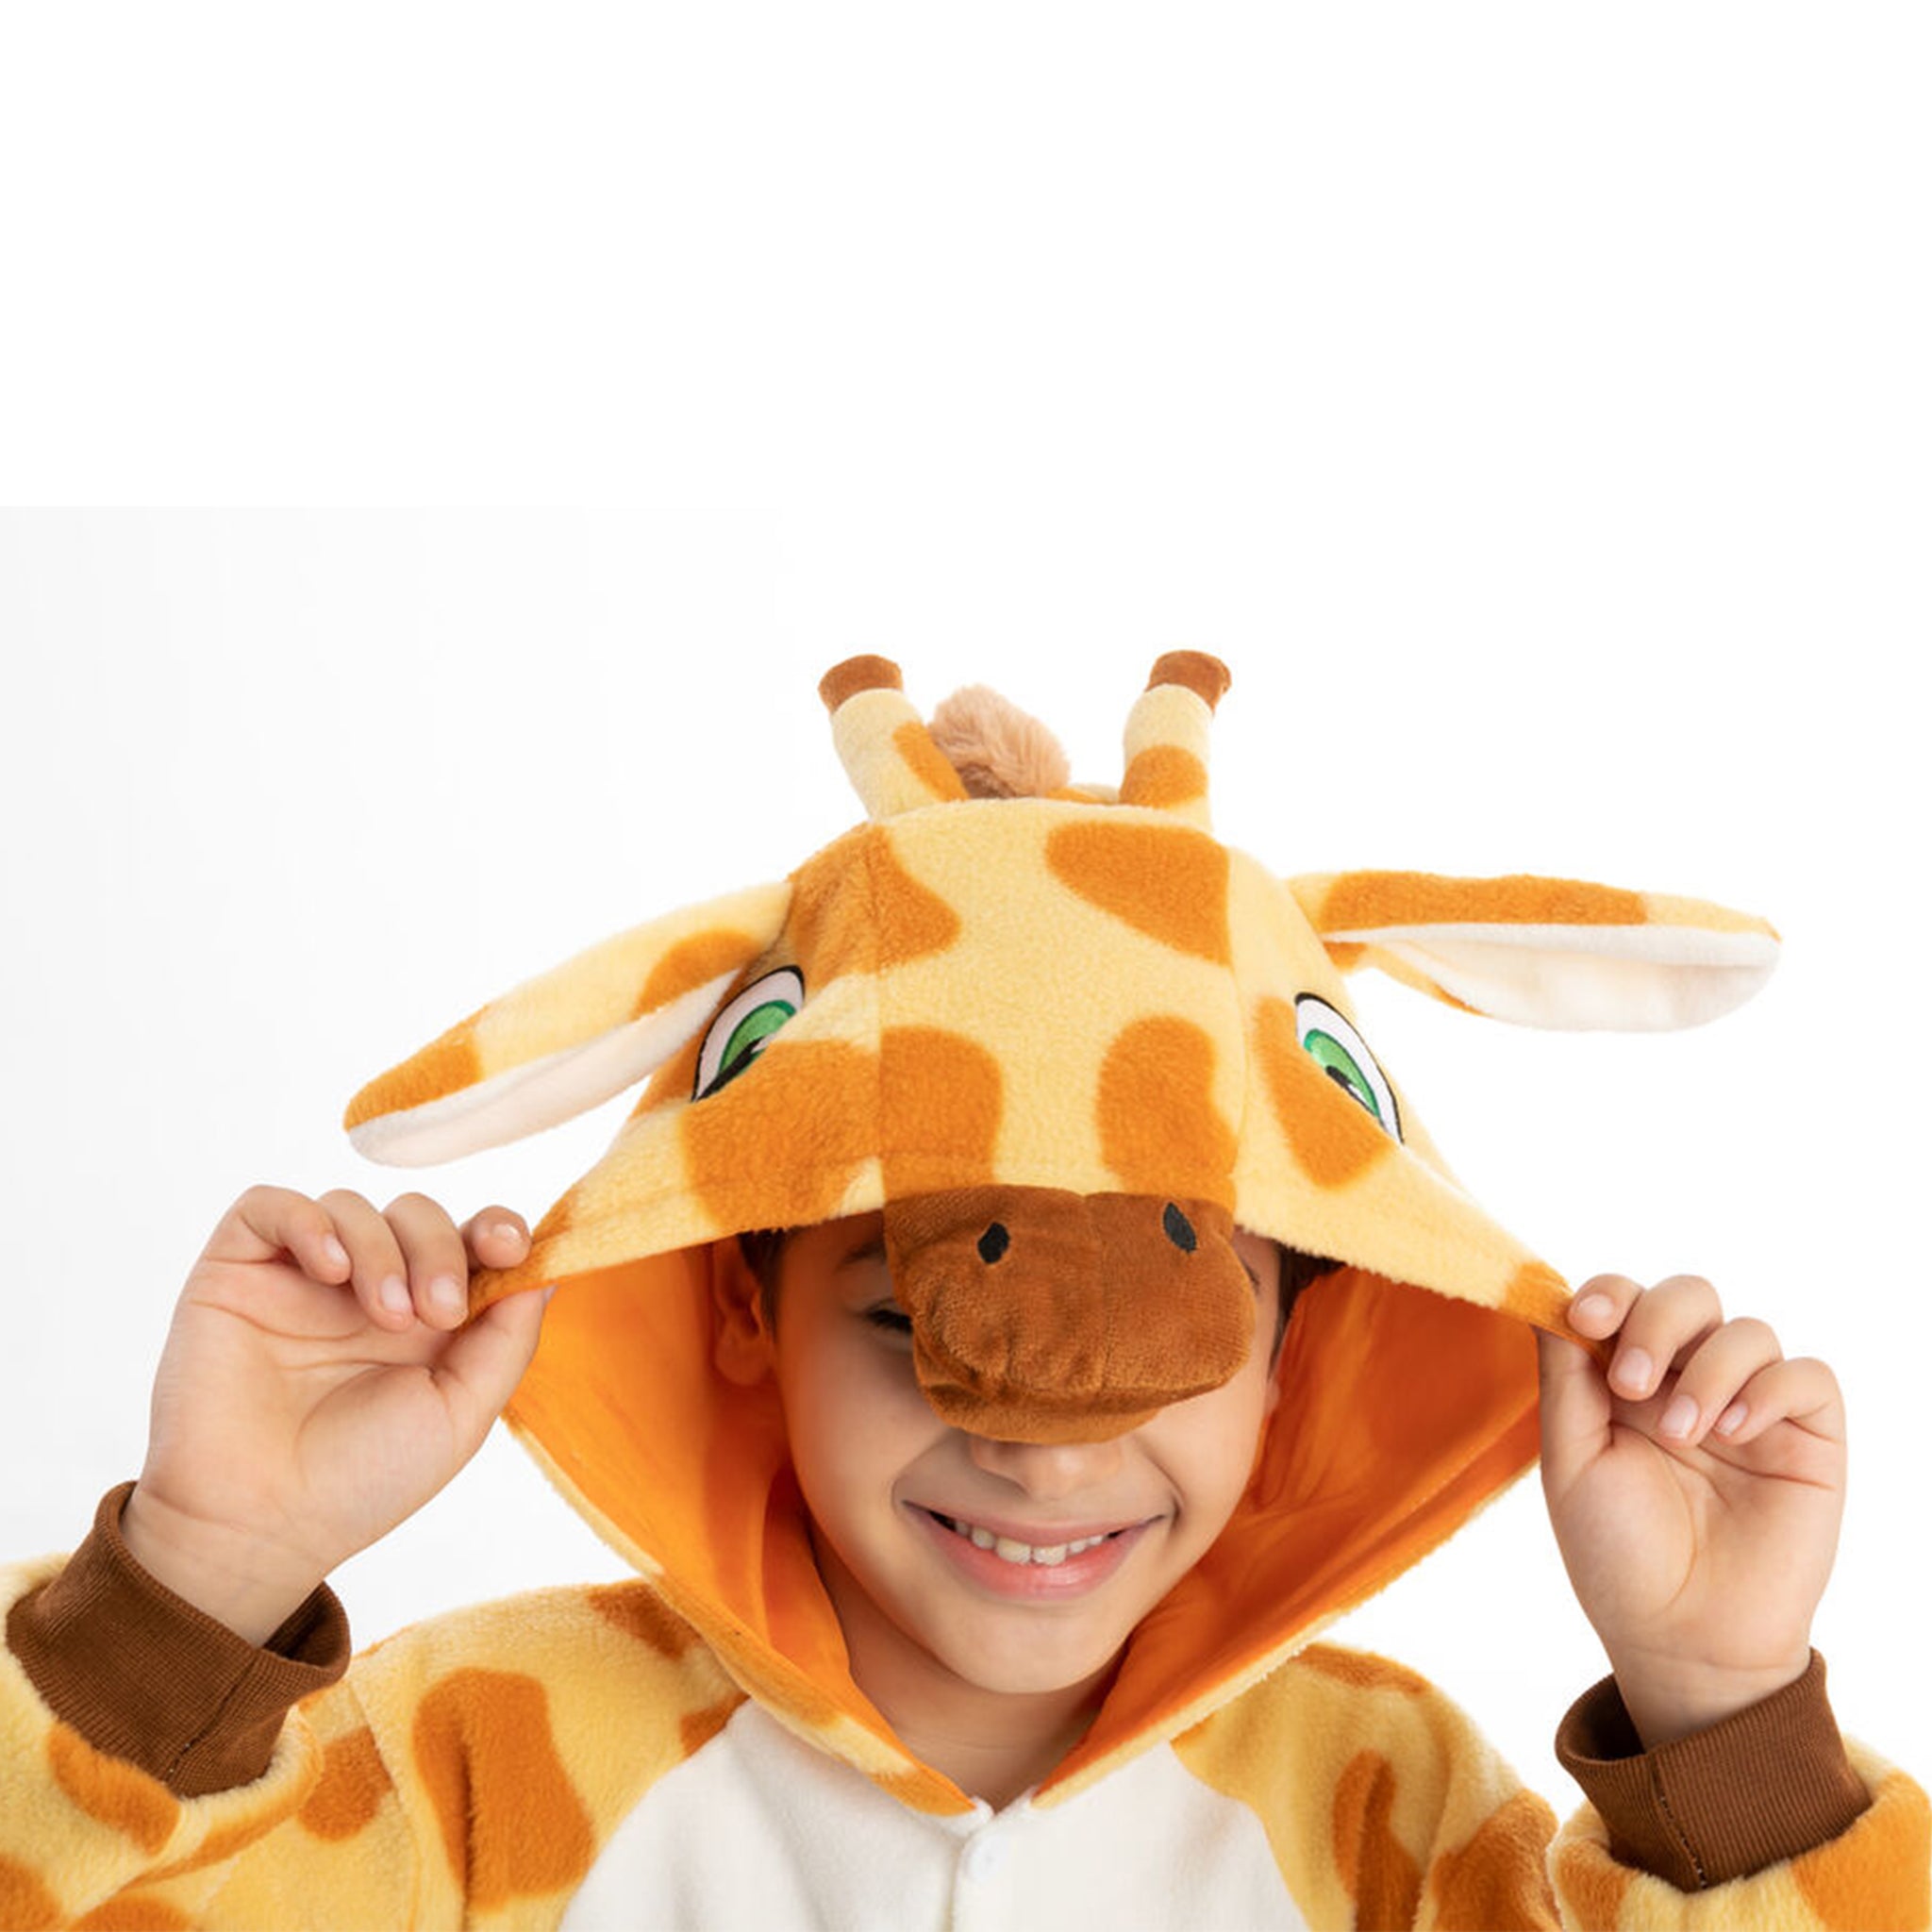 Déguisement Pyjama girafe